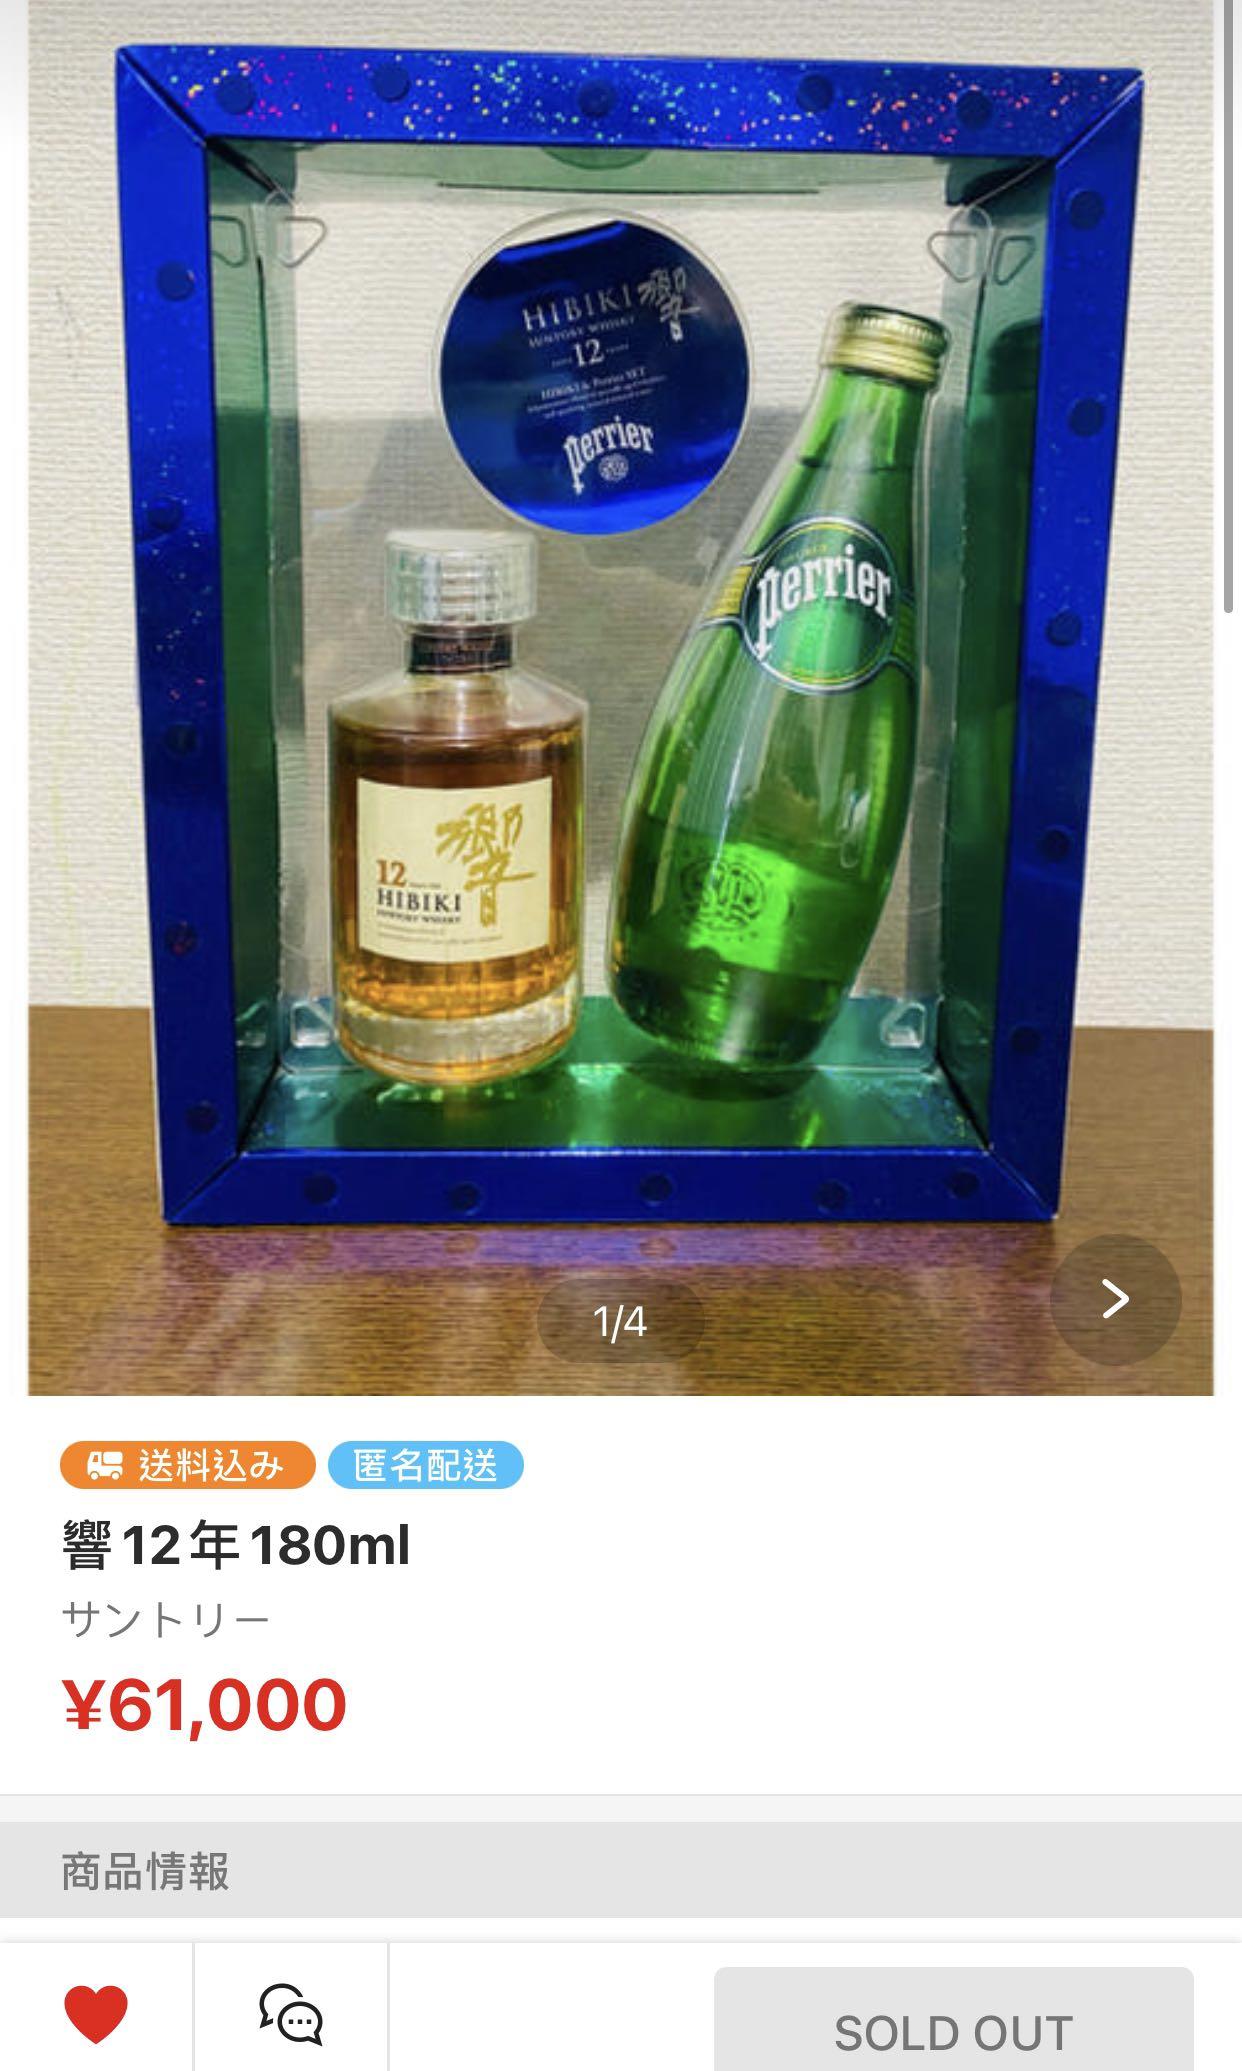 響12 (180ml) 特別版套裝(Hibiki 12 Mini Package), 嘢食& 嘢飲, 酒精